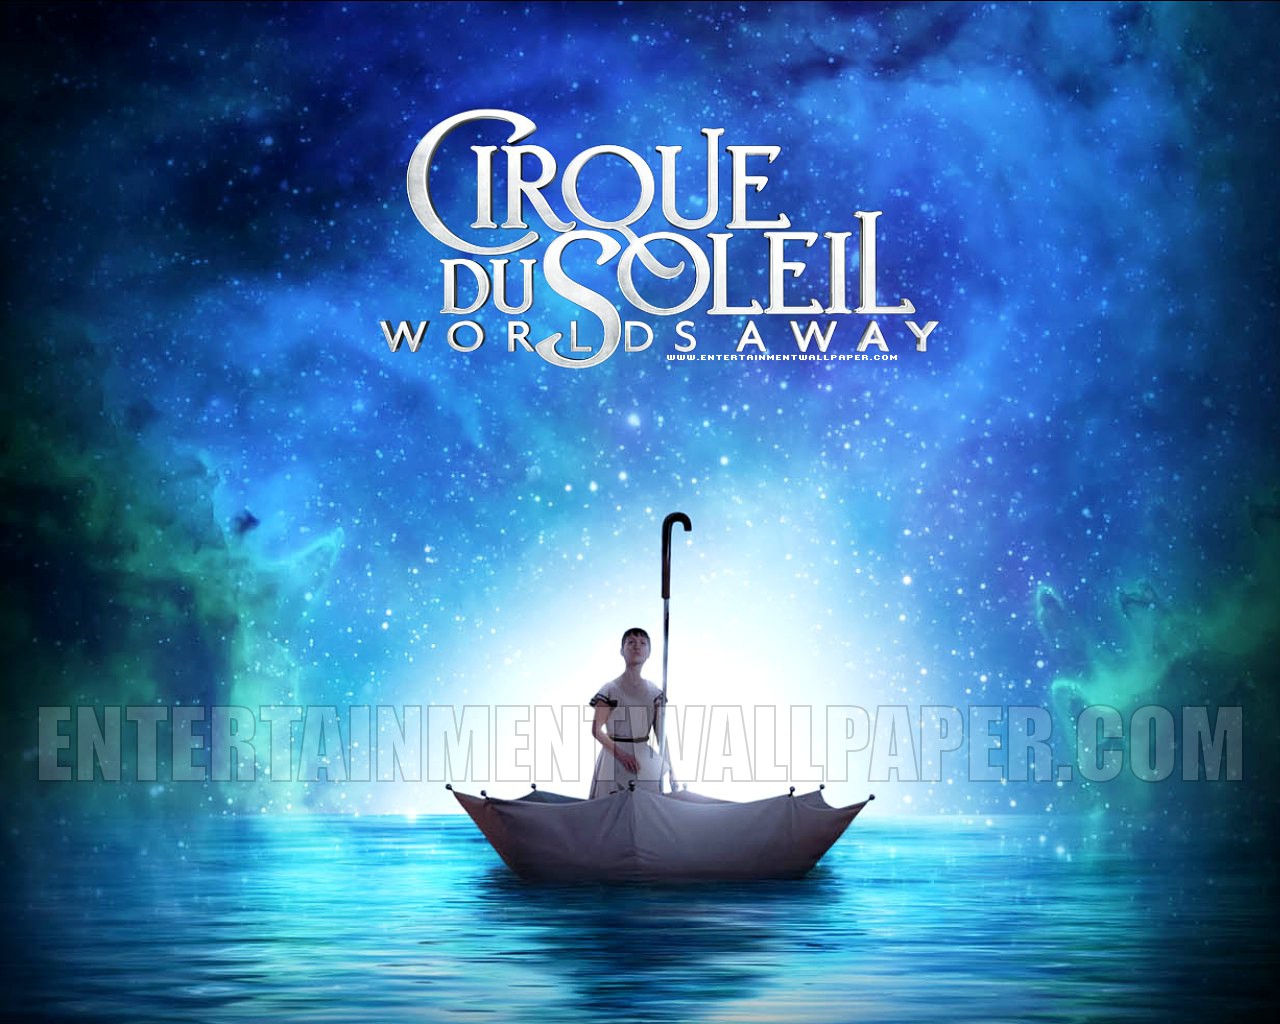 Cirque Du Soleil: Worlds Away Backgrounds, Compatible - PC, Mobile, Gadgets| 1280x1024 px